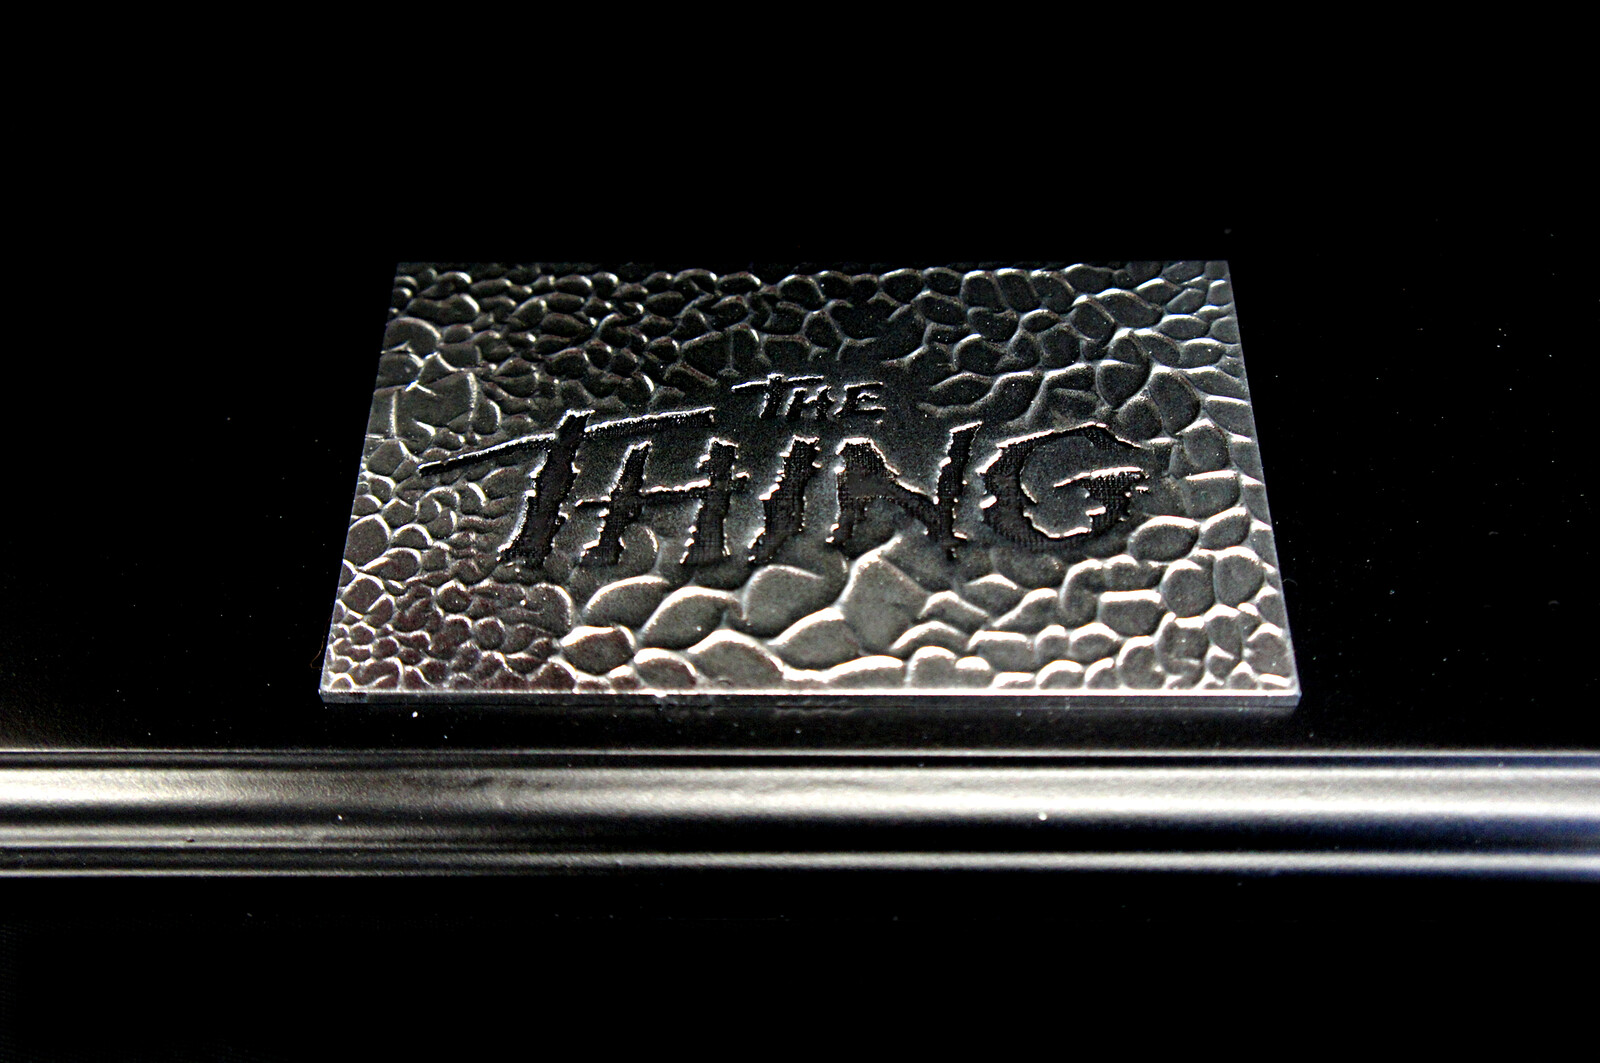 遊星からの物体X
John Carpenter The Thing: Blair-Thing 1:1